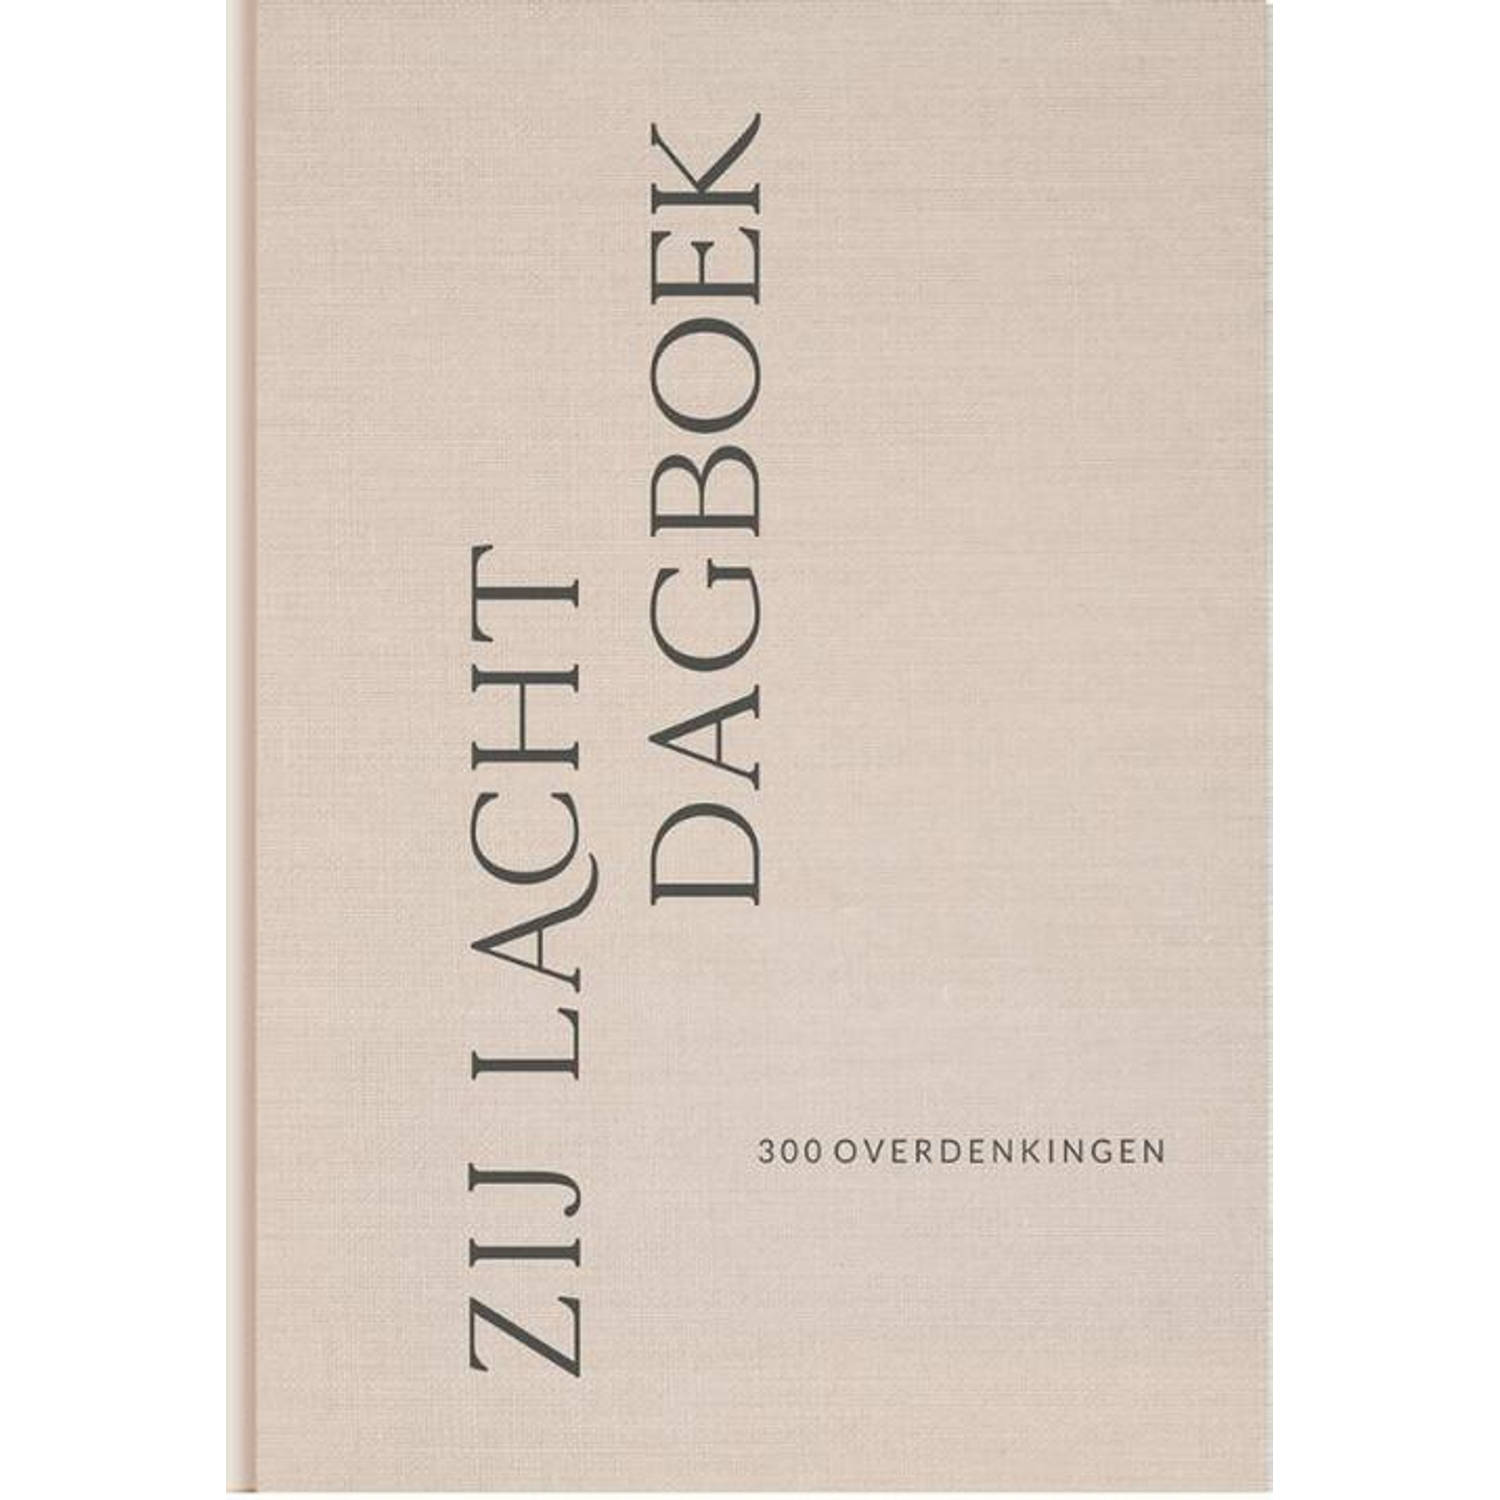 Zij Lacht dagboek. 300 overdenkingen, Hardcover